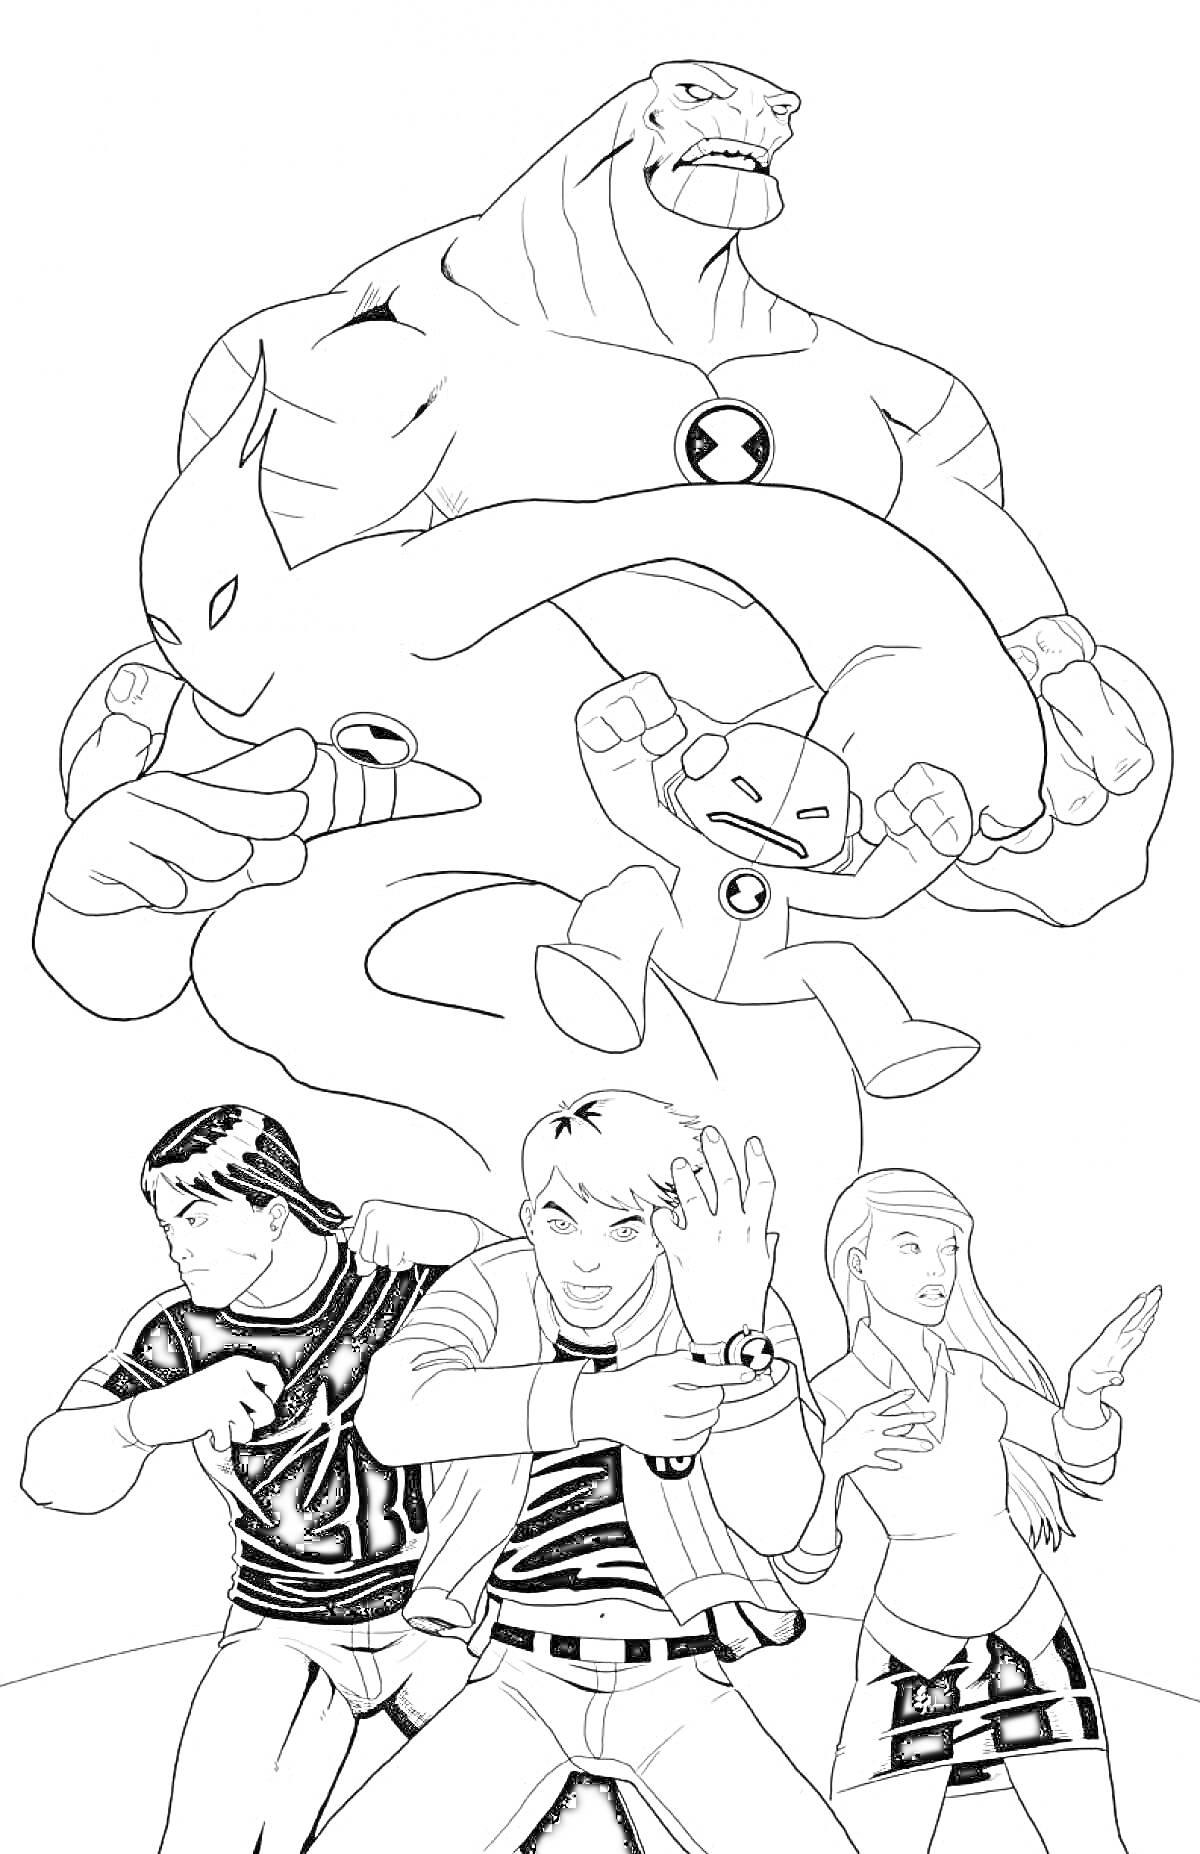 Раскраска Героические персонажи с различными телесными способностями с тремя людьми впереди